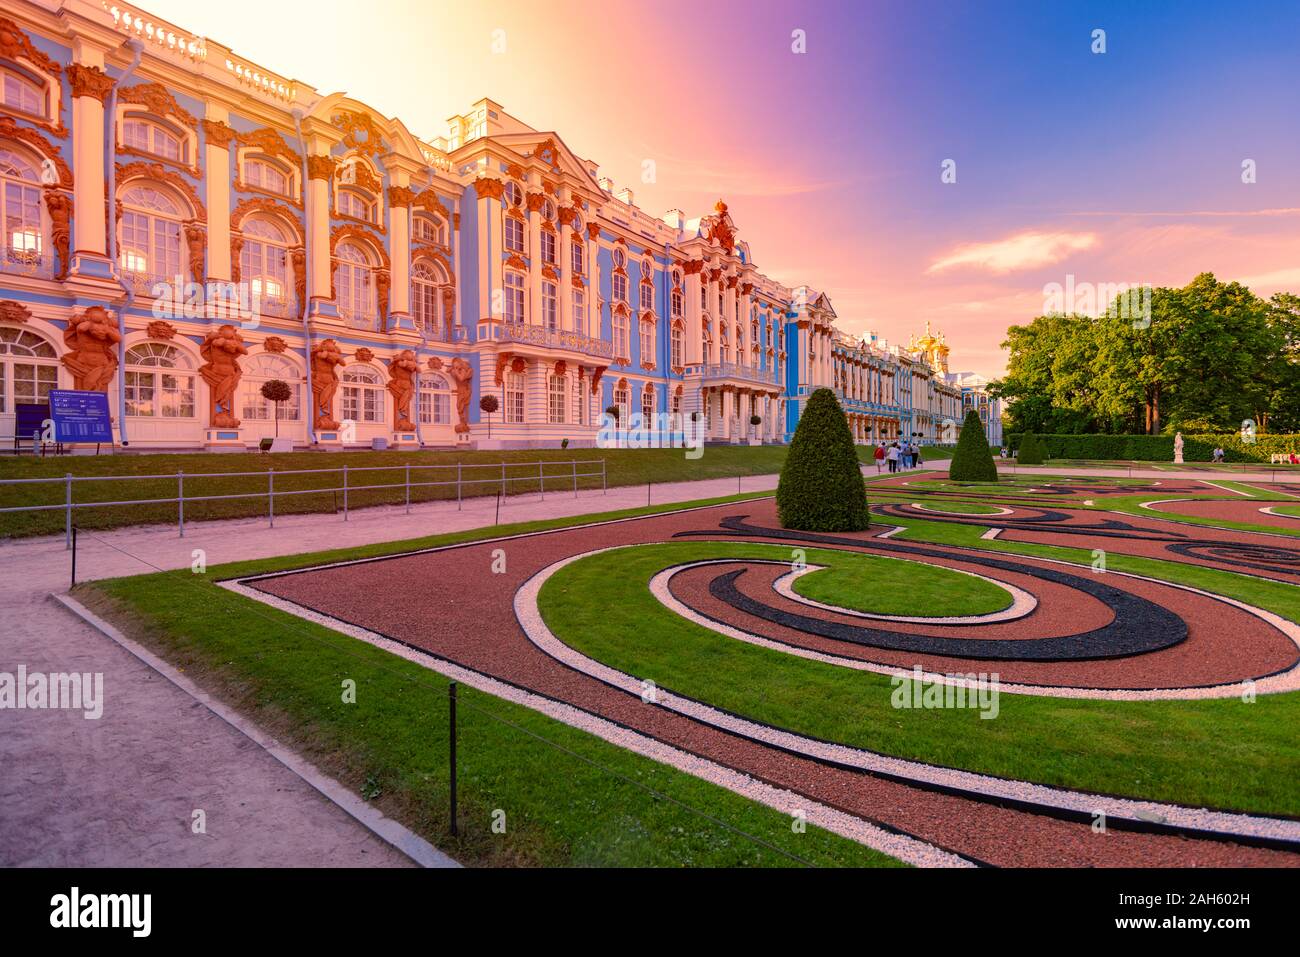 San Petersburgo, Rusia - Junio 21, 2015: Tsarskoye Selo Palace en la ciudad de Pushkin, cerca de San Petersburgo, Rusia. La arquitectura y los viajes en Europa Foto de stock